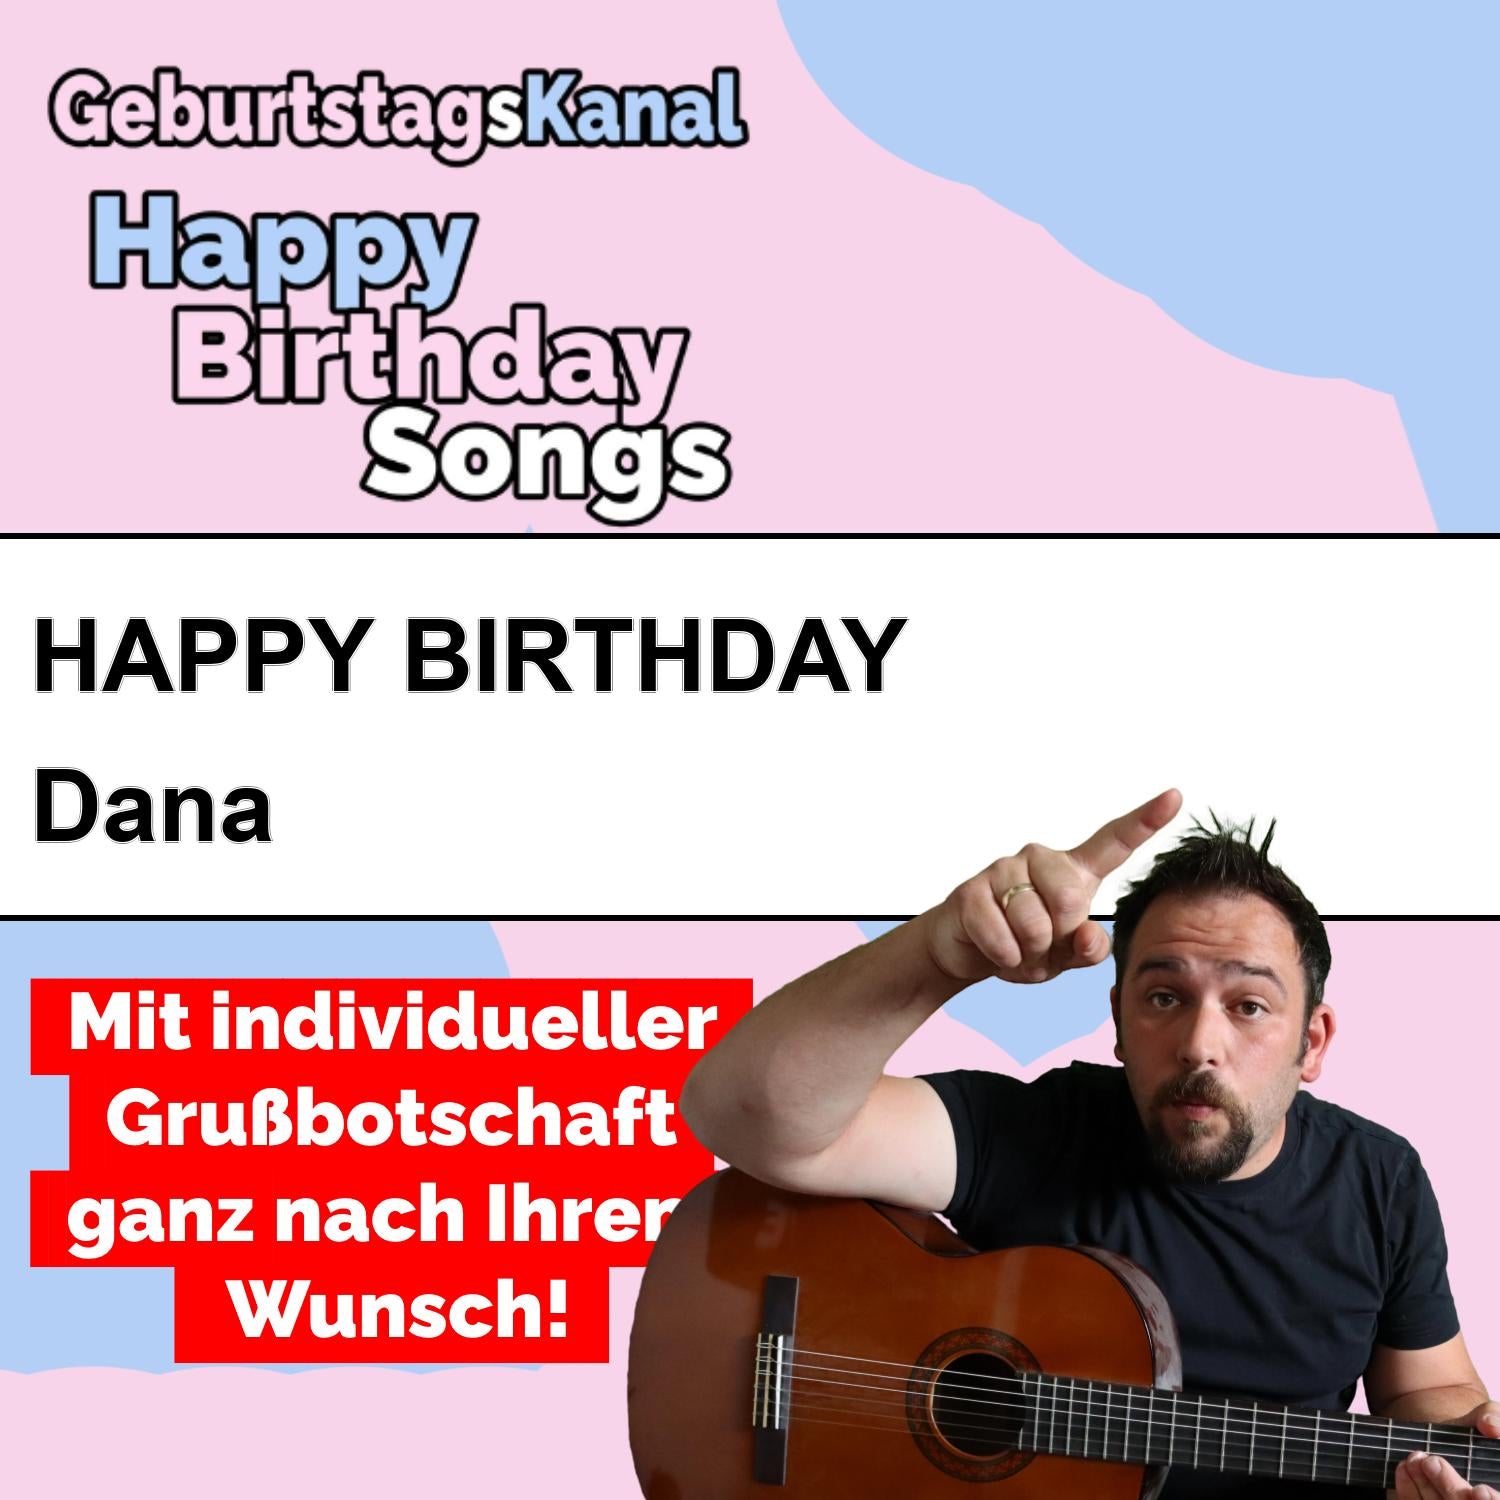 Produktbild Happy Birthday to you Dana mit Wunschgrußbotschaft